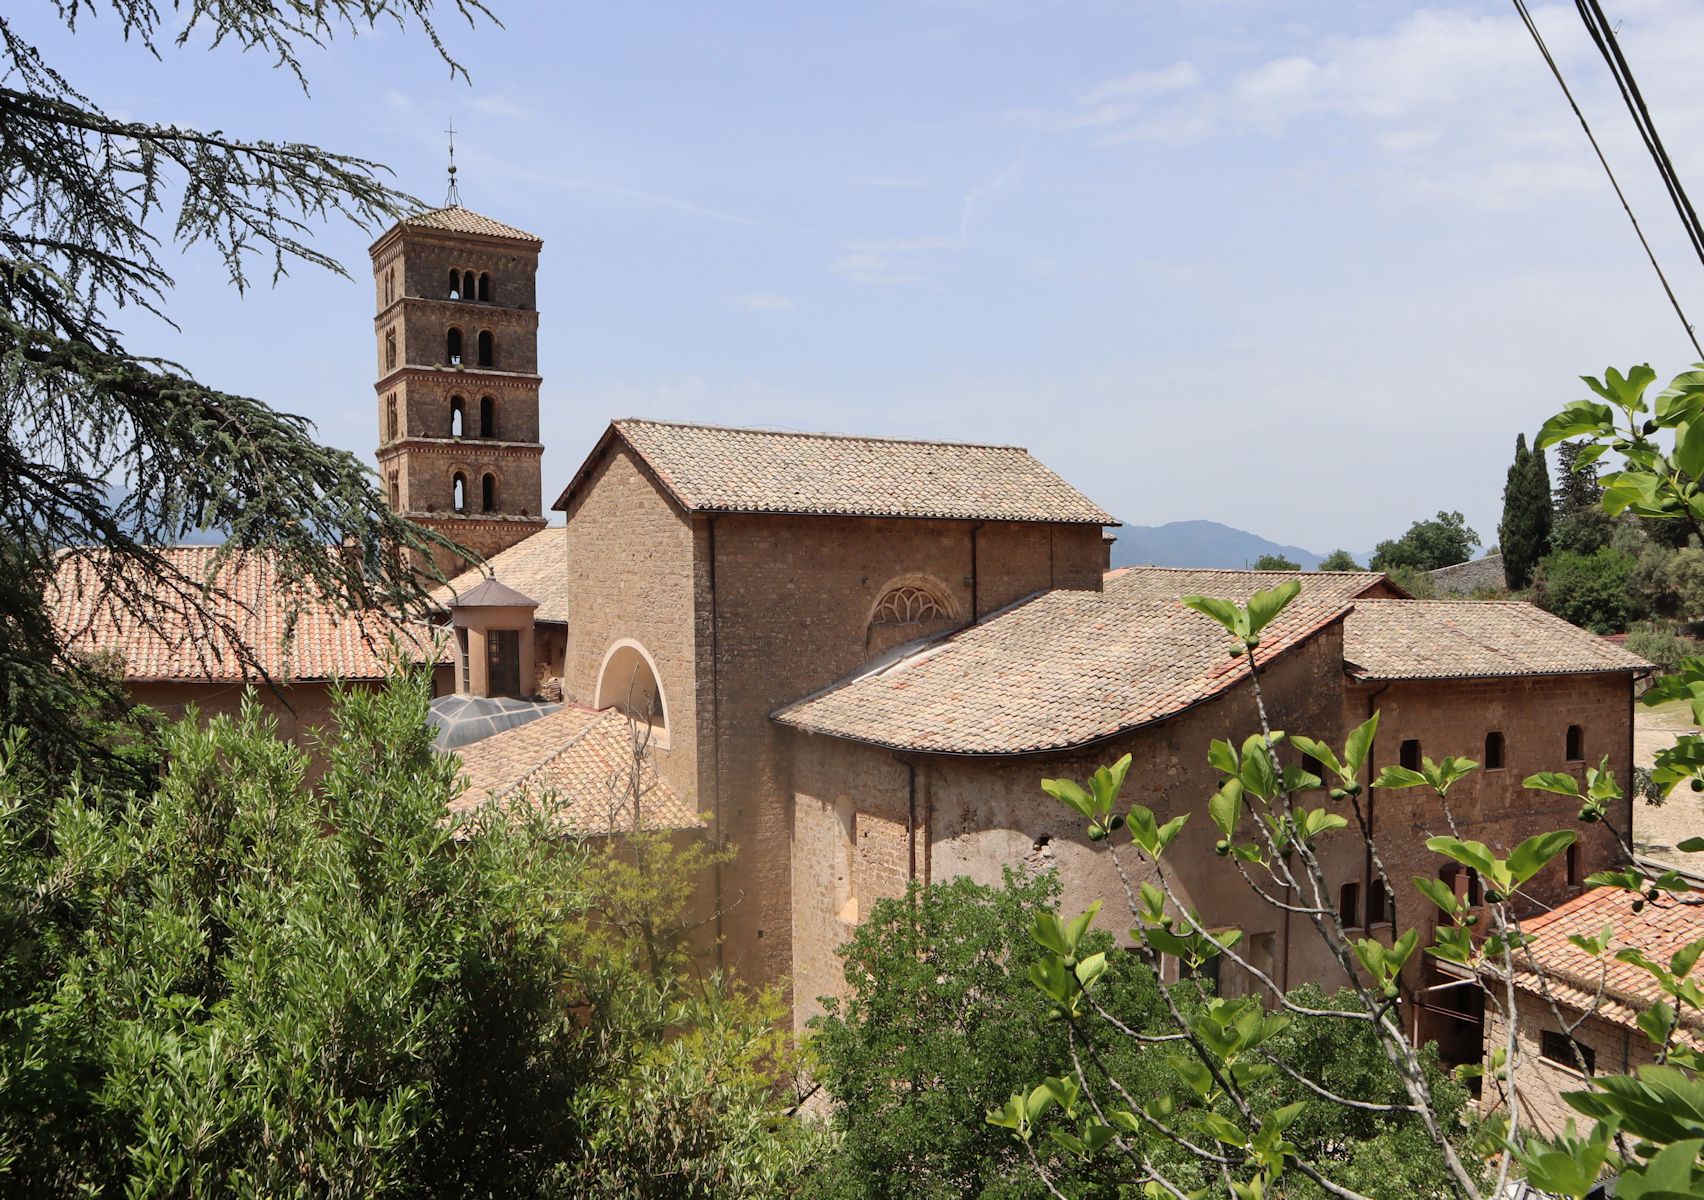 Kloster und Kathedrale Santa Scolastica bei Subiaco